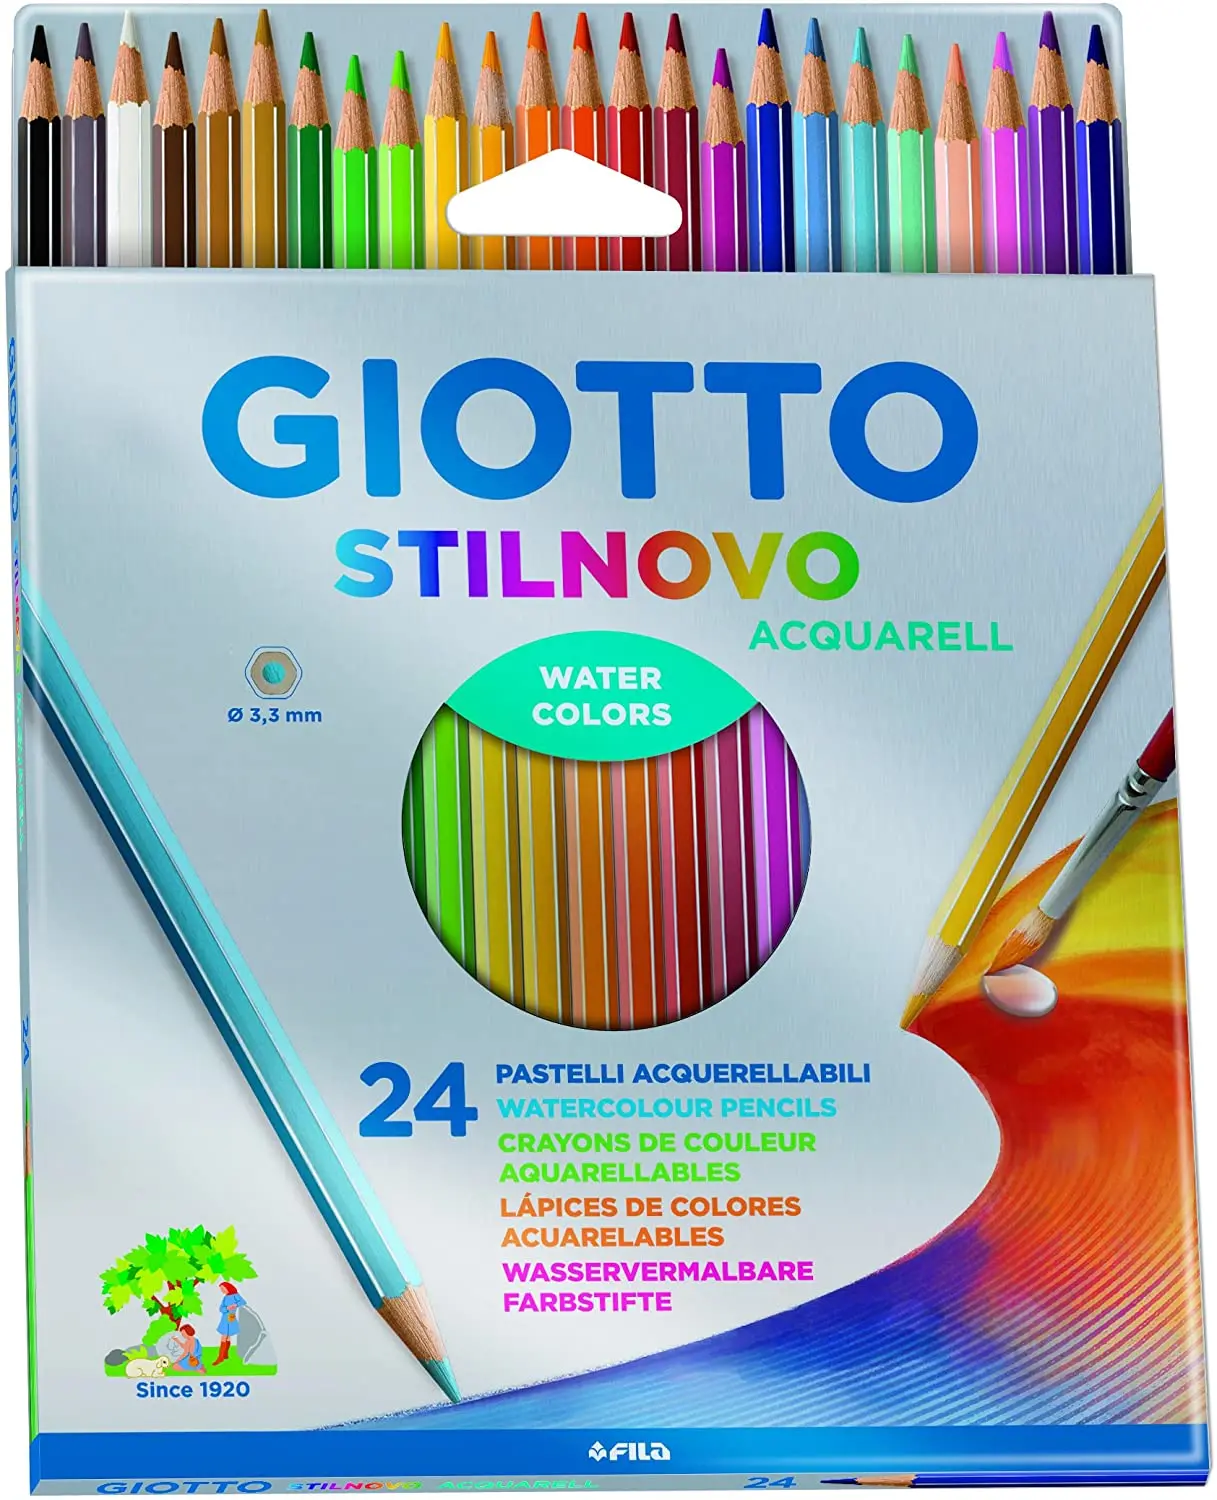 Giotto Stilnovo Acquarell Pack de 24 Lapices de Colores Acuarelables Hexagonales - Mina 3.3 mm - Mad